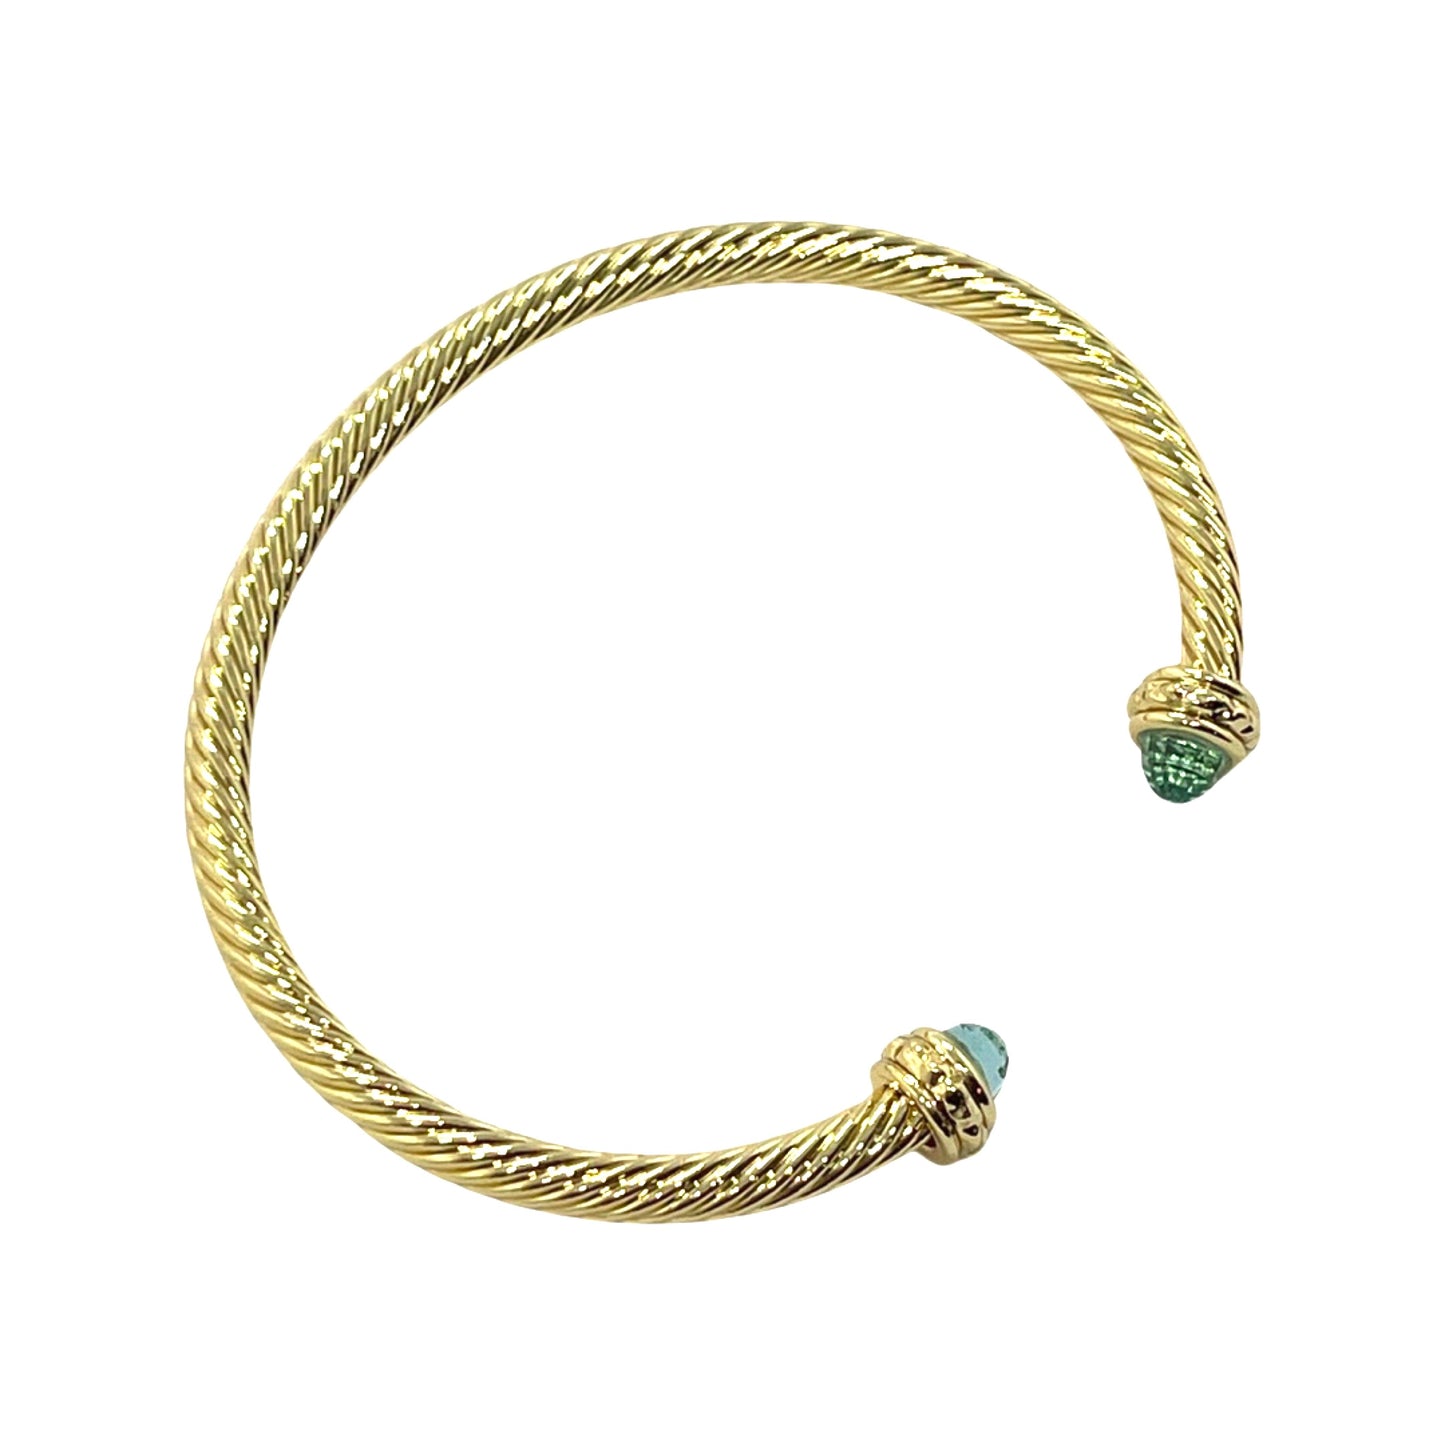 Golden Classic Cable Bracelet